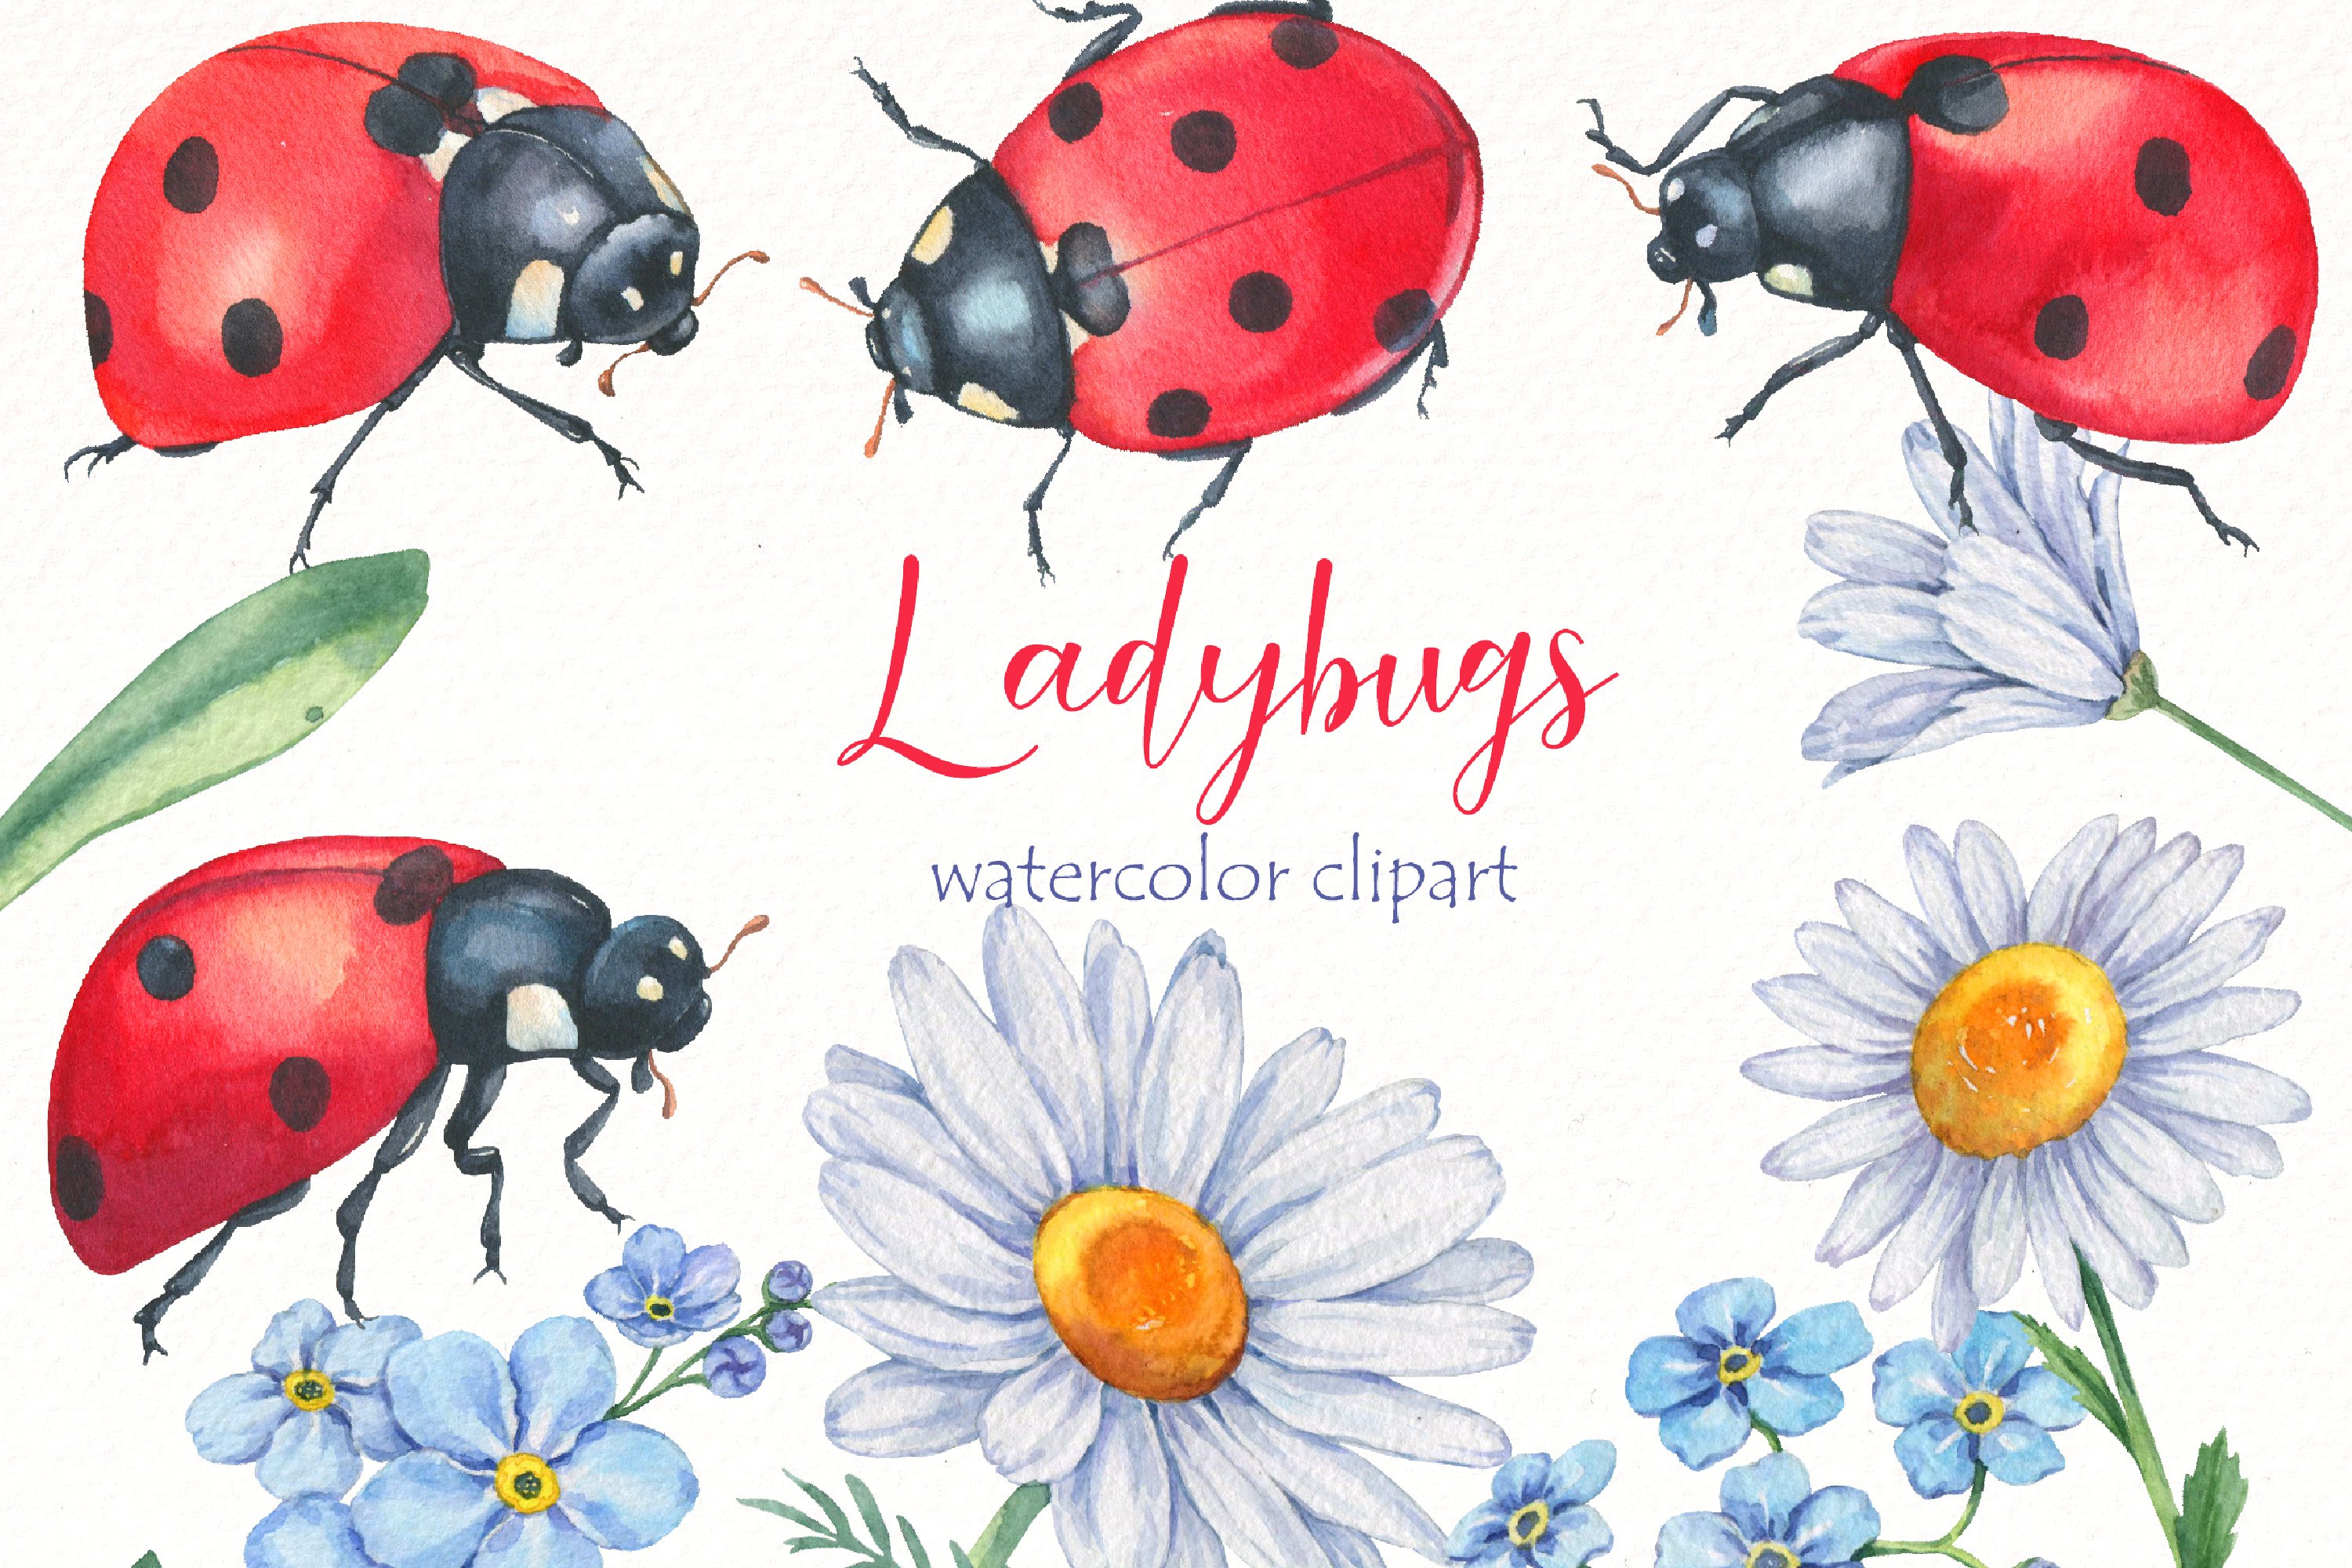 watercolor ladybug clipart bundle elements.